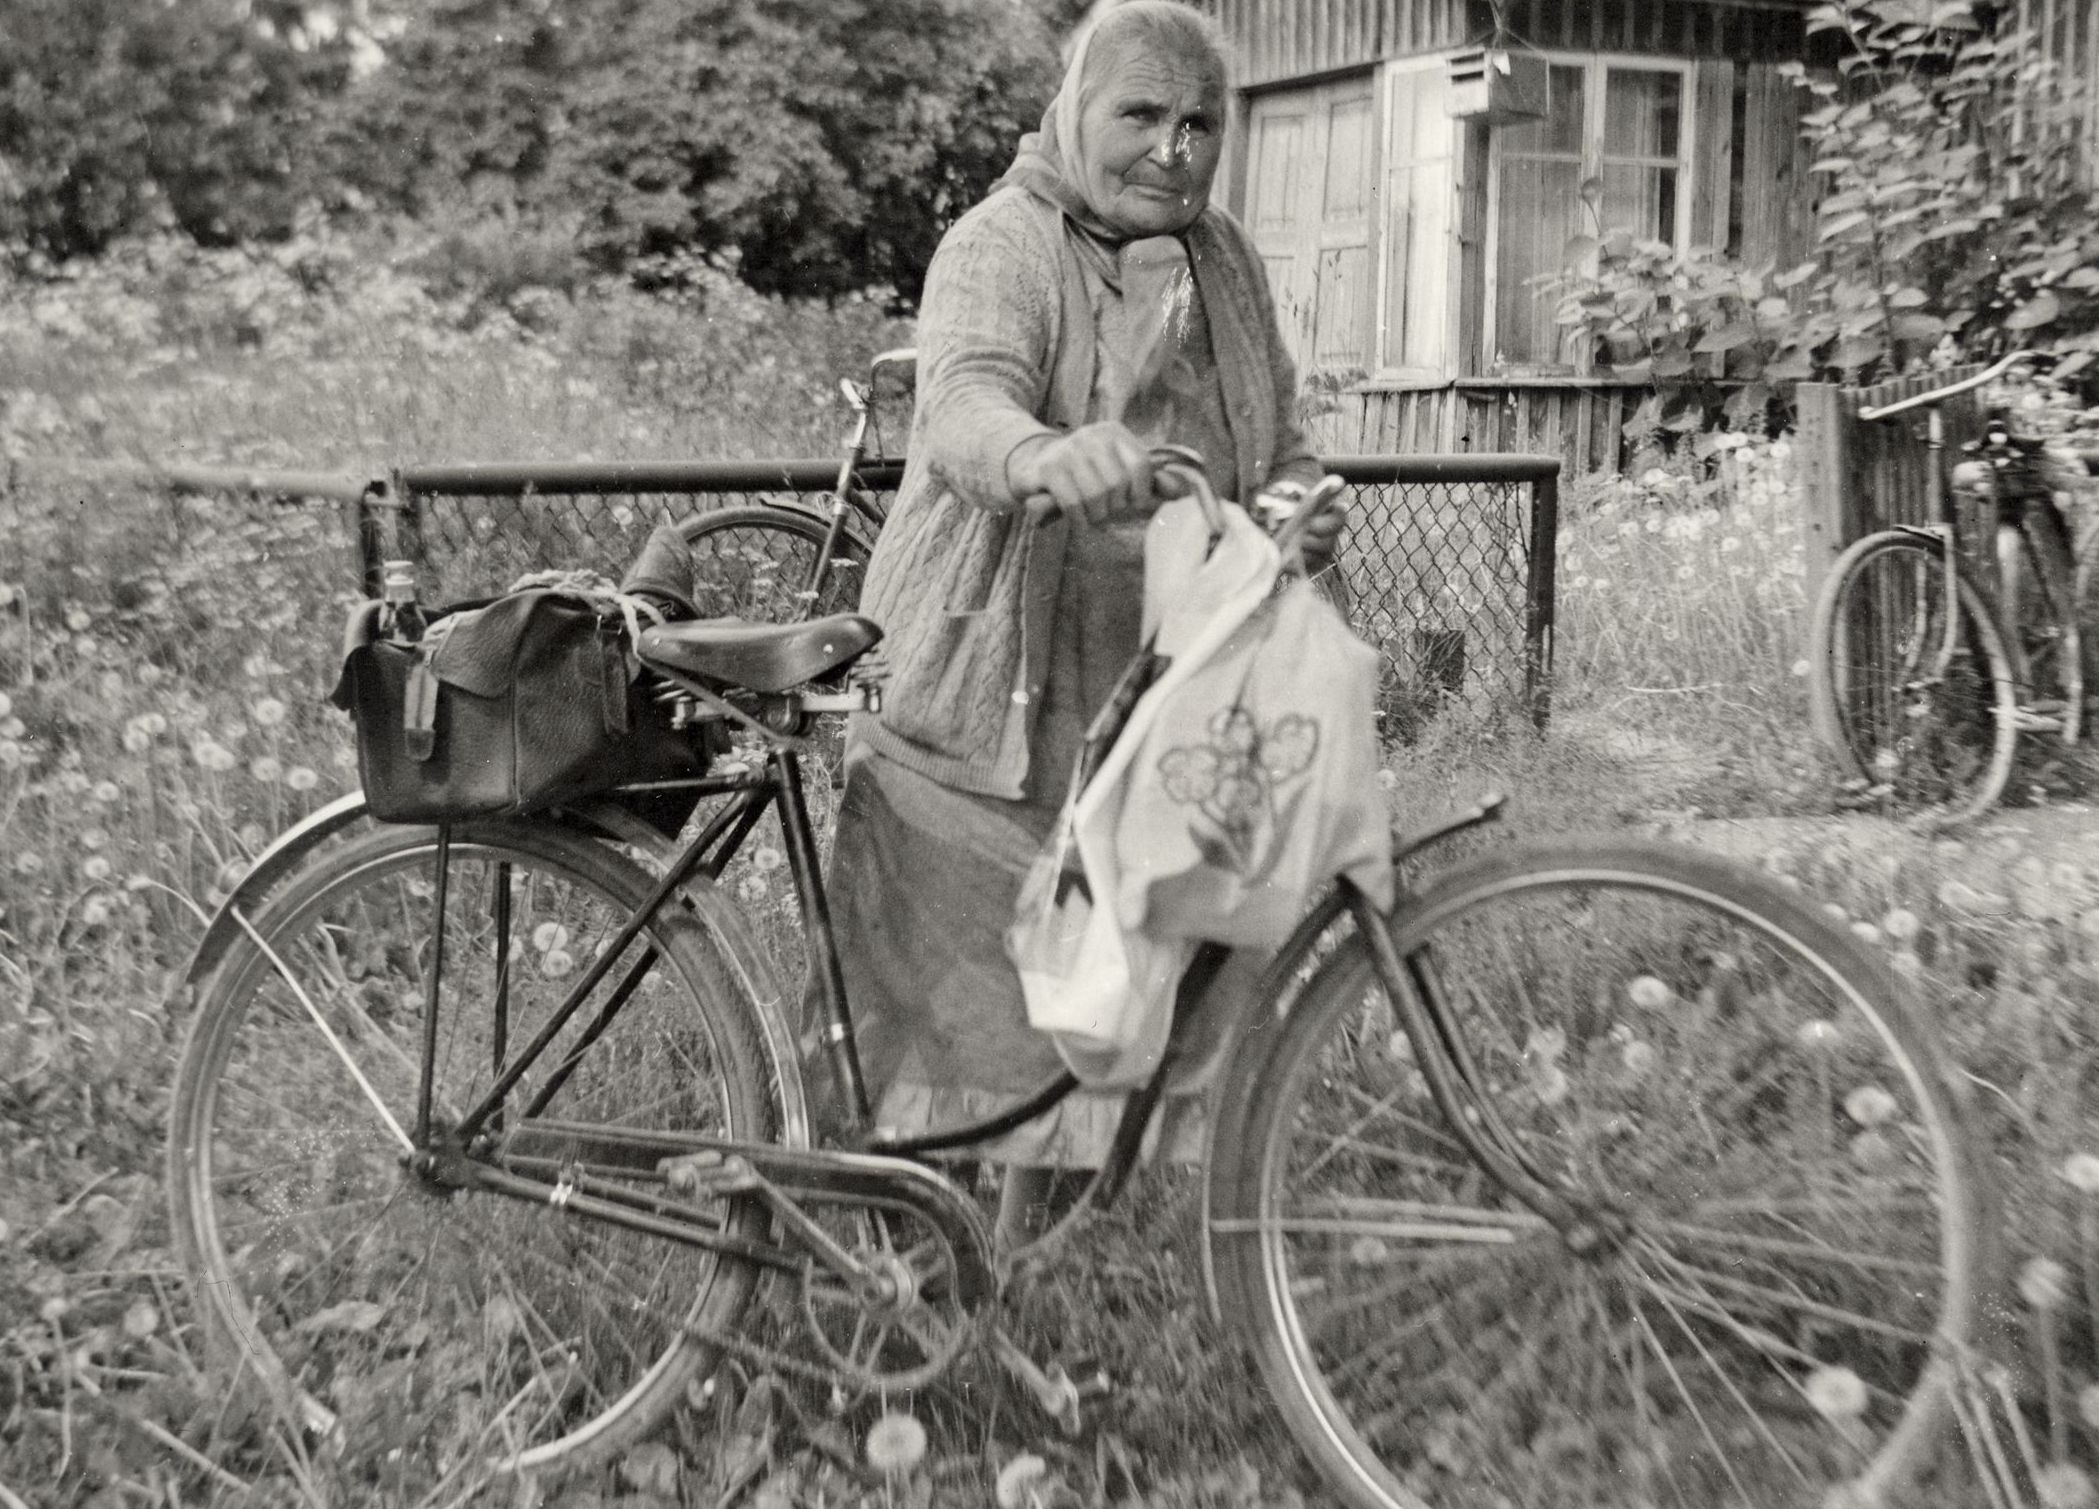 Jalgratas jäi vaatamata autotranspordi levikule maapiirkondades arvestatavaks isiklikuks transpordivahendiks aastakümneteks